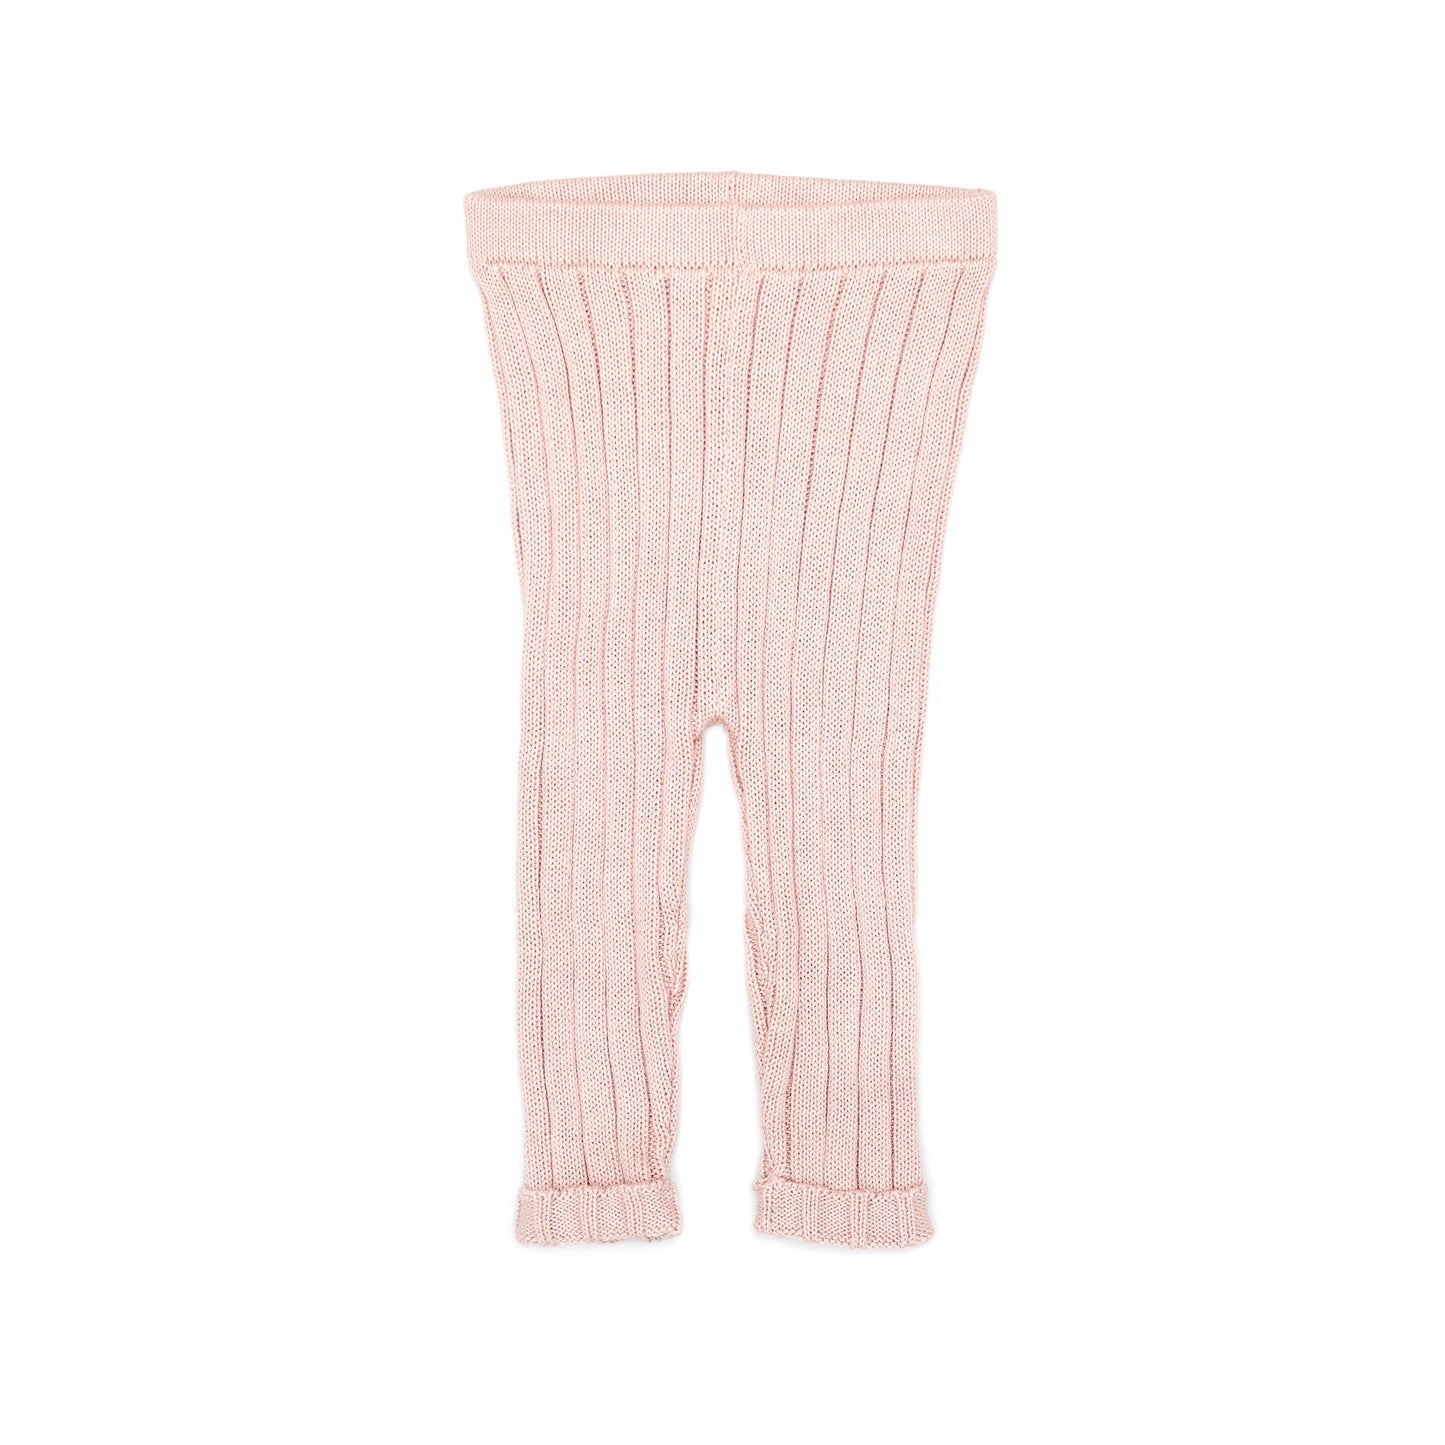 Tun Tun Knit Garden Sweater & Legging Outfit